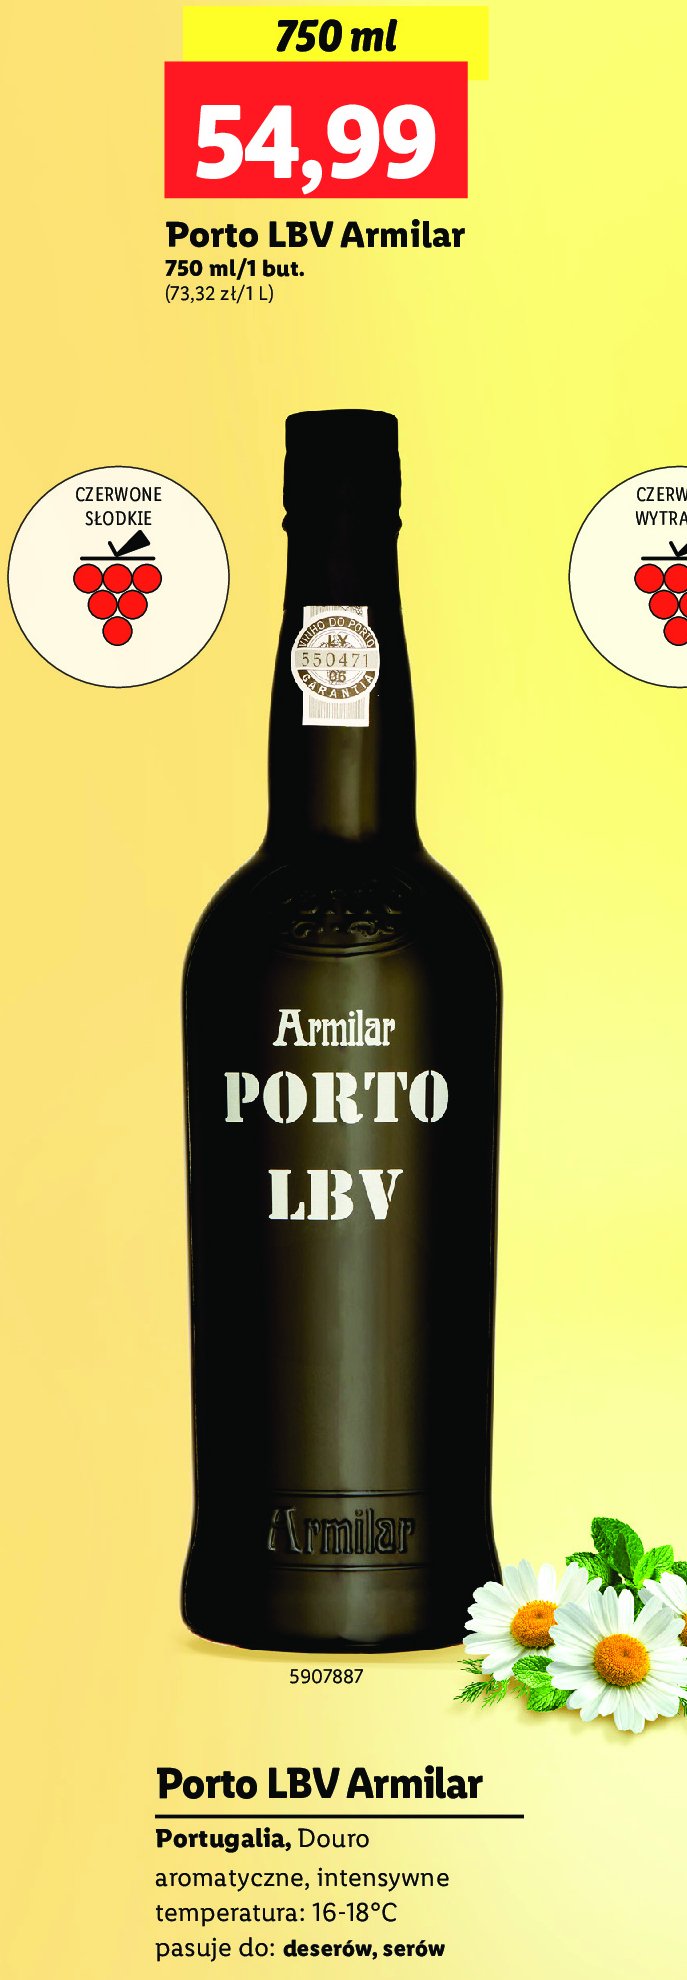 Wino Armilar porto lbv promocja